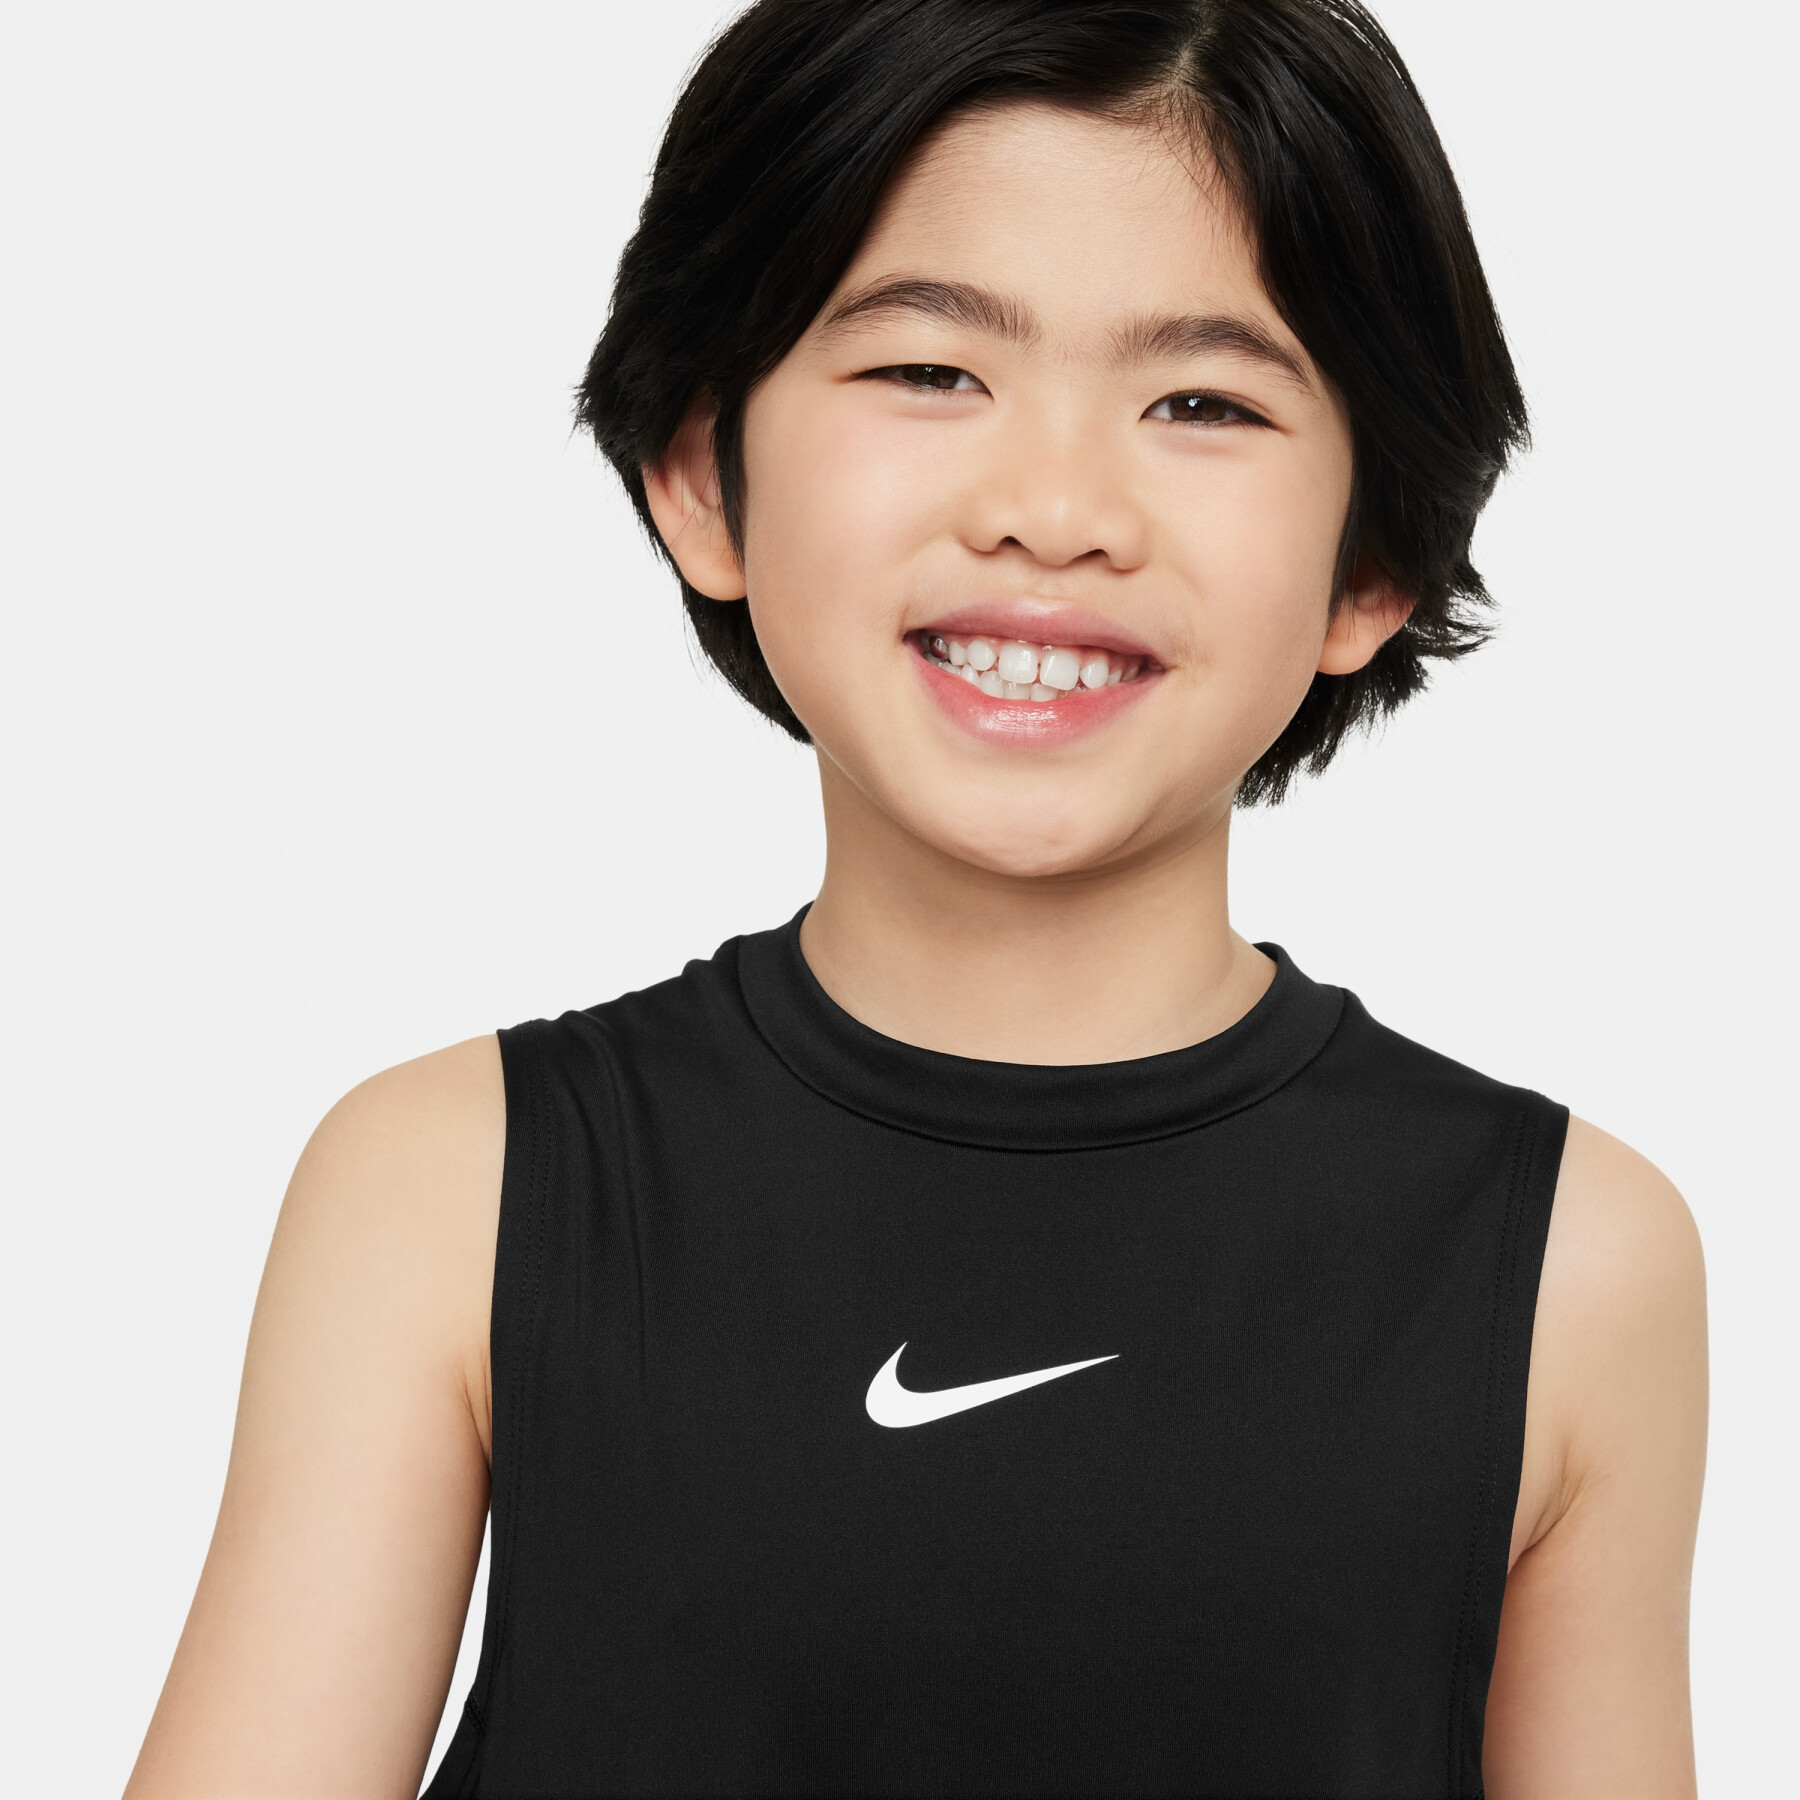 Kinder-Top Nike Pro